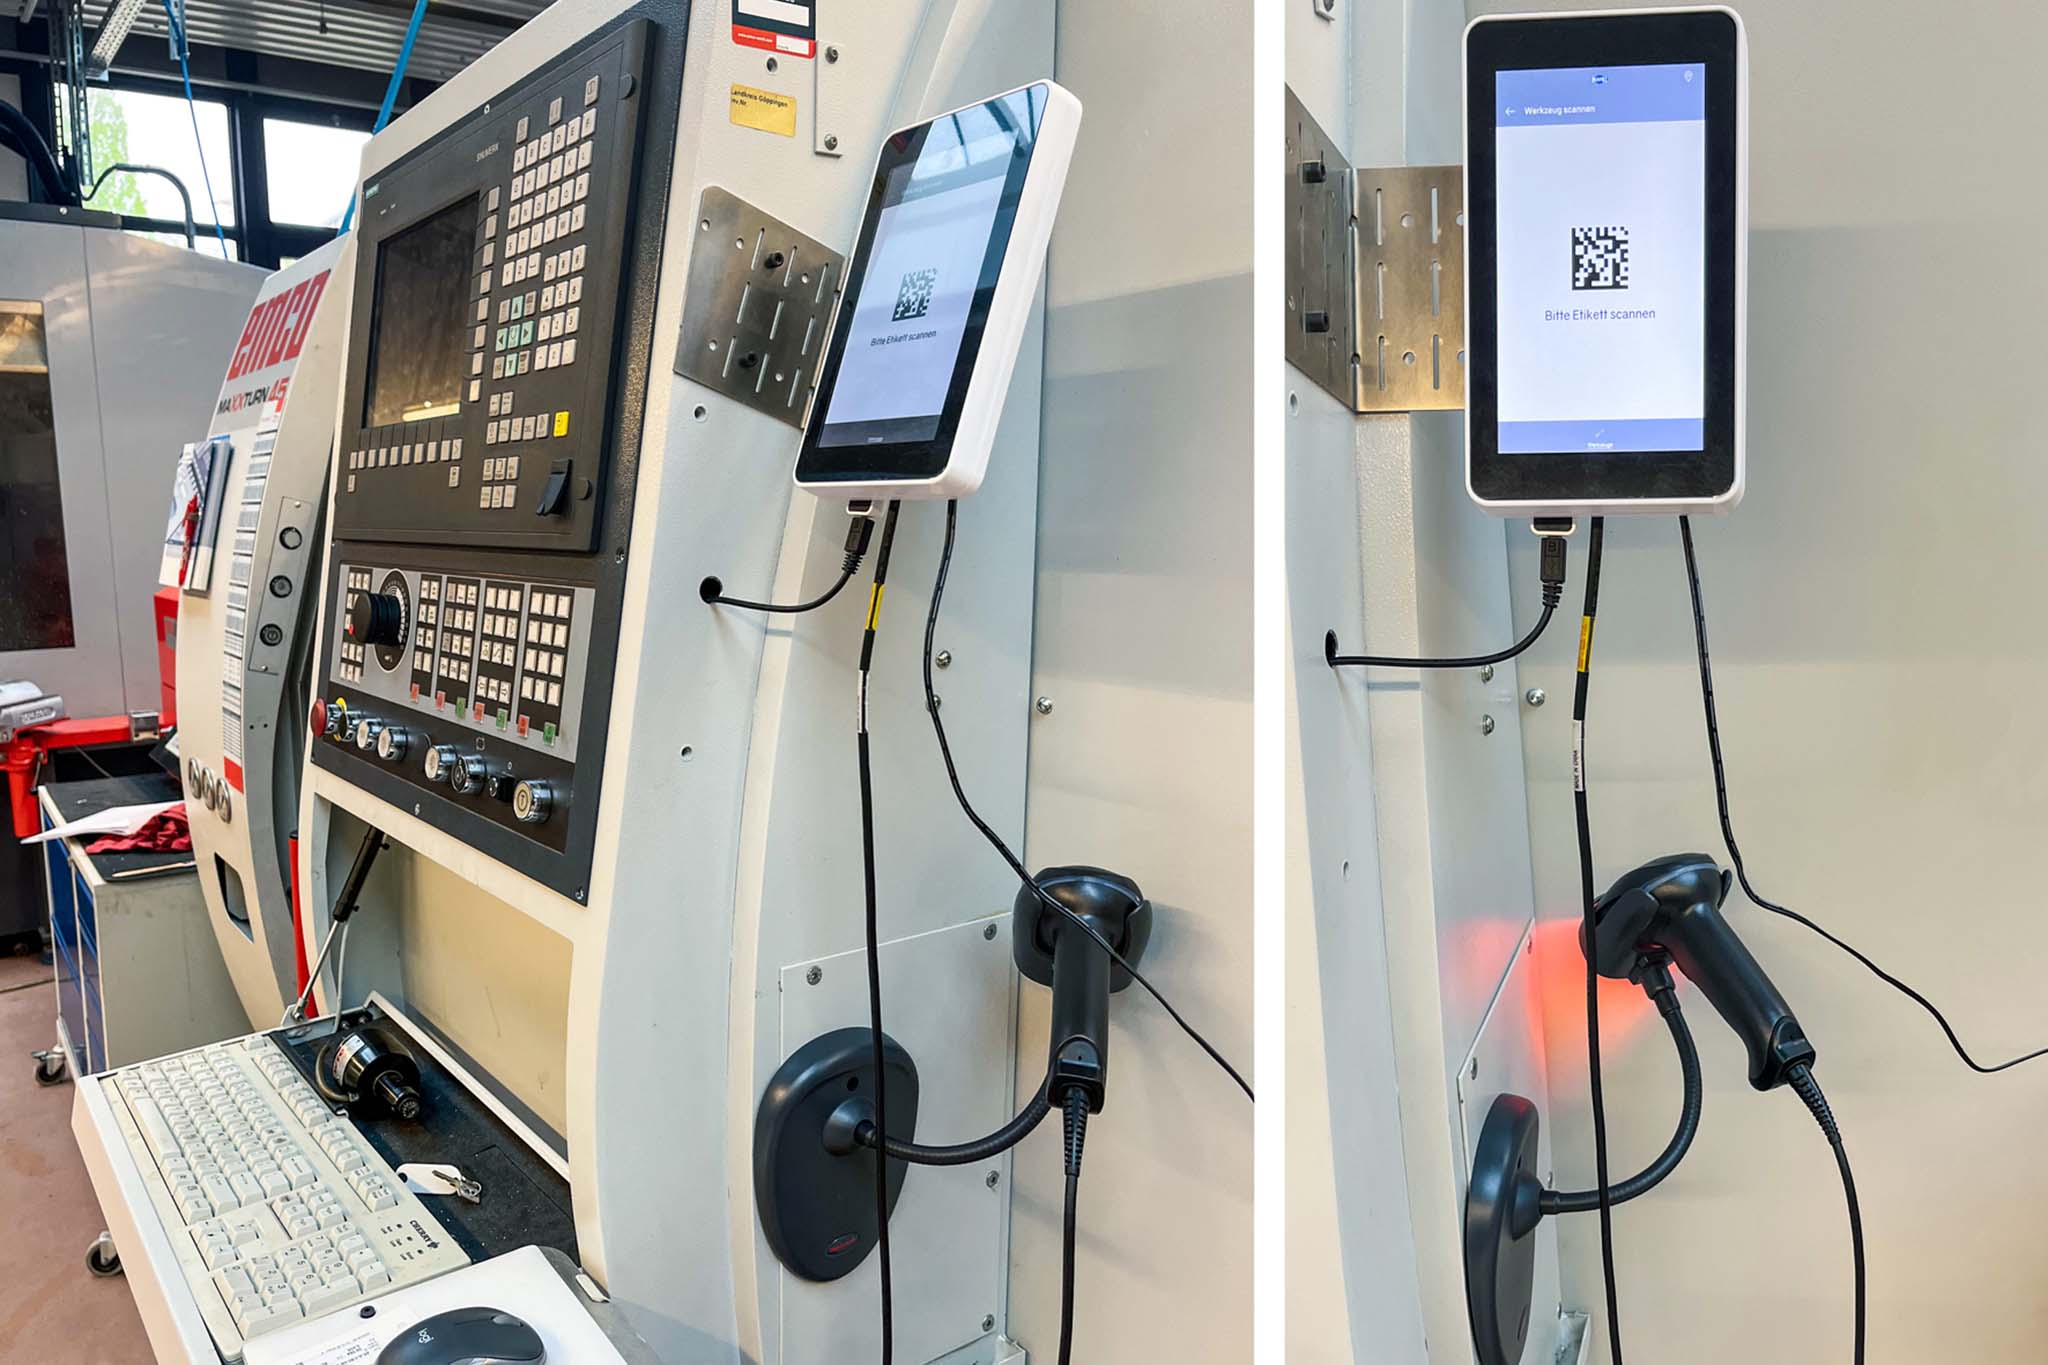 Zwei der EMCO Maschinen sind mit c-Connect Boxen ausgestattet, um Daten per Scan an die Maschine übertragen zu können.